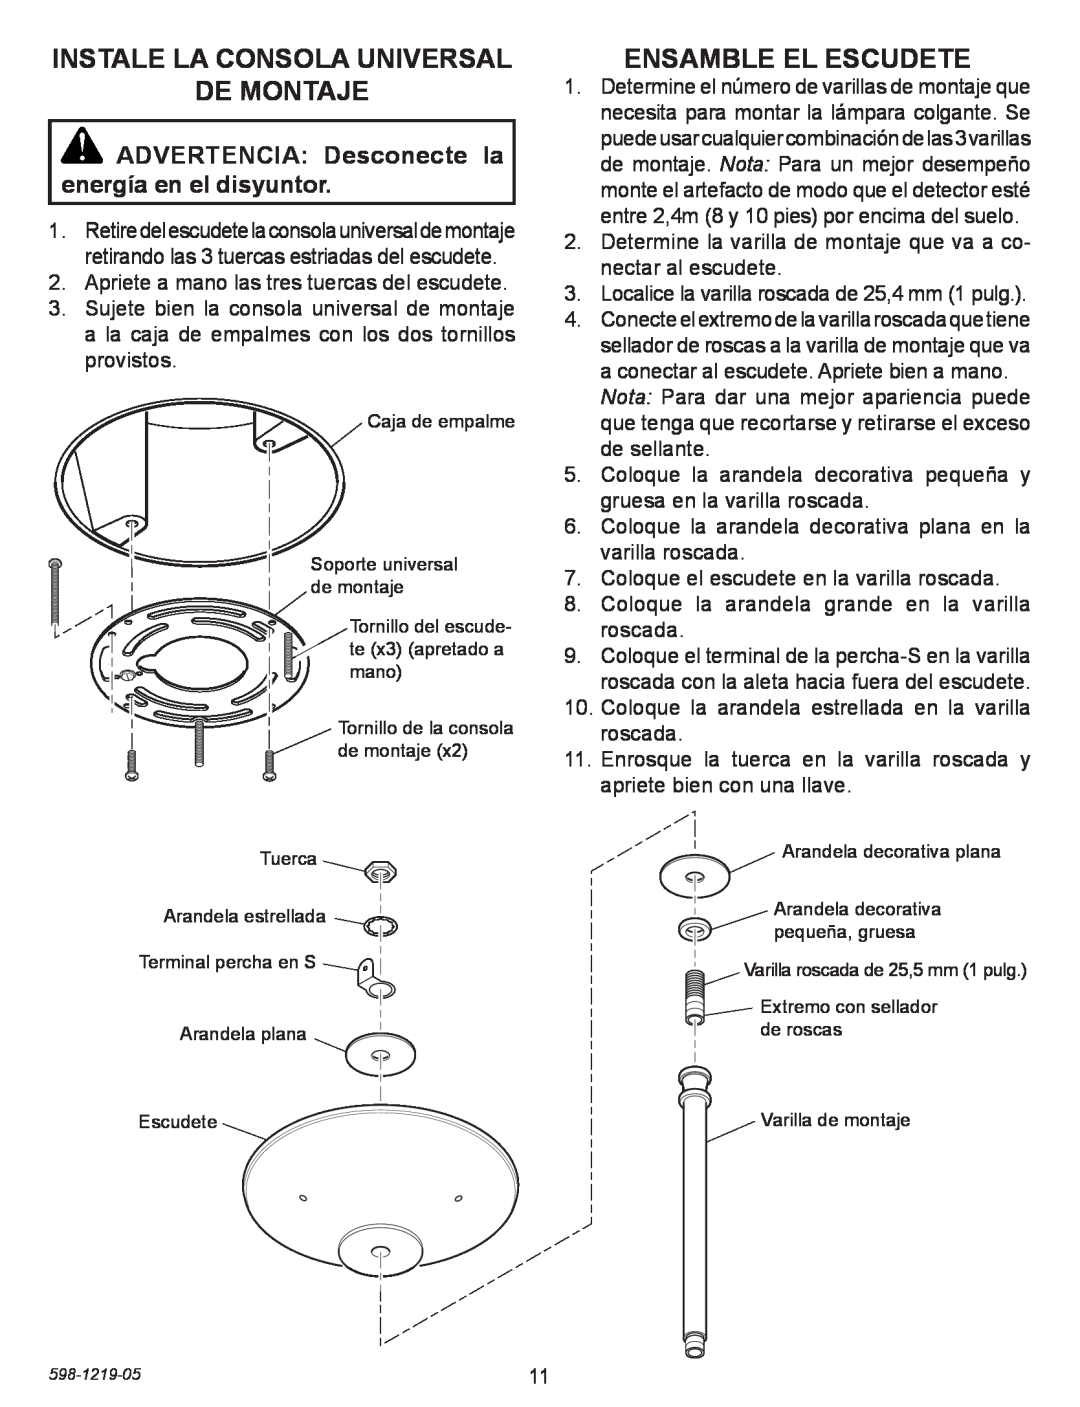 Heath Zenith 4350 manual Instale La Consola Universal De Montaje, Ensamble El Escudete 